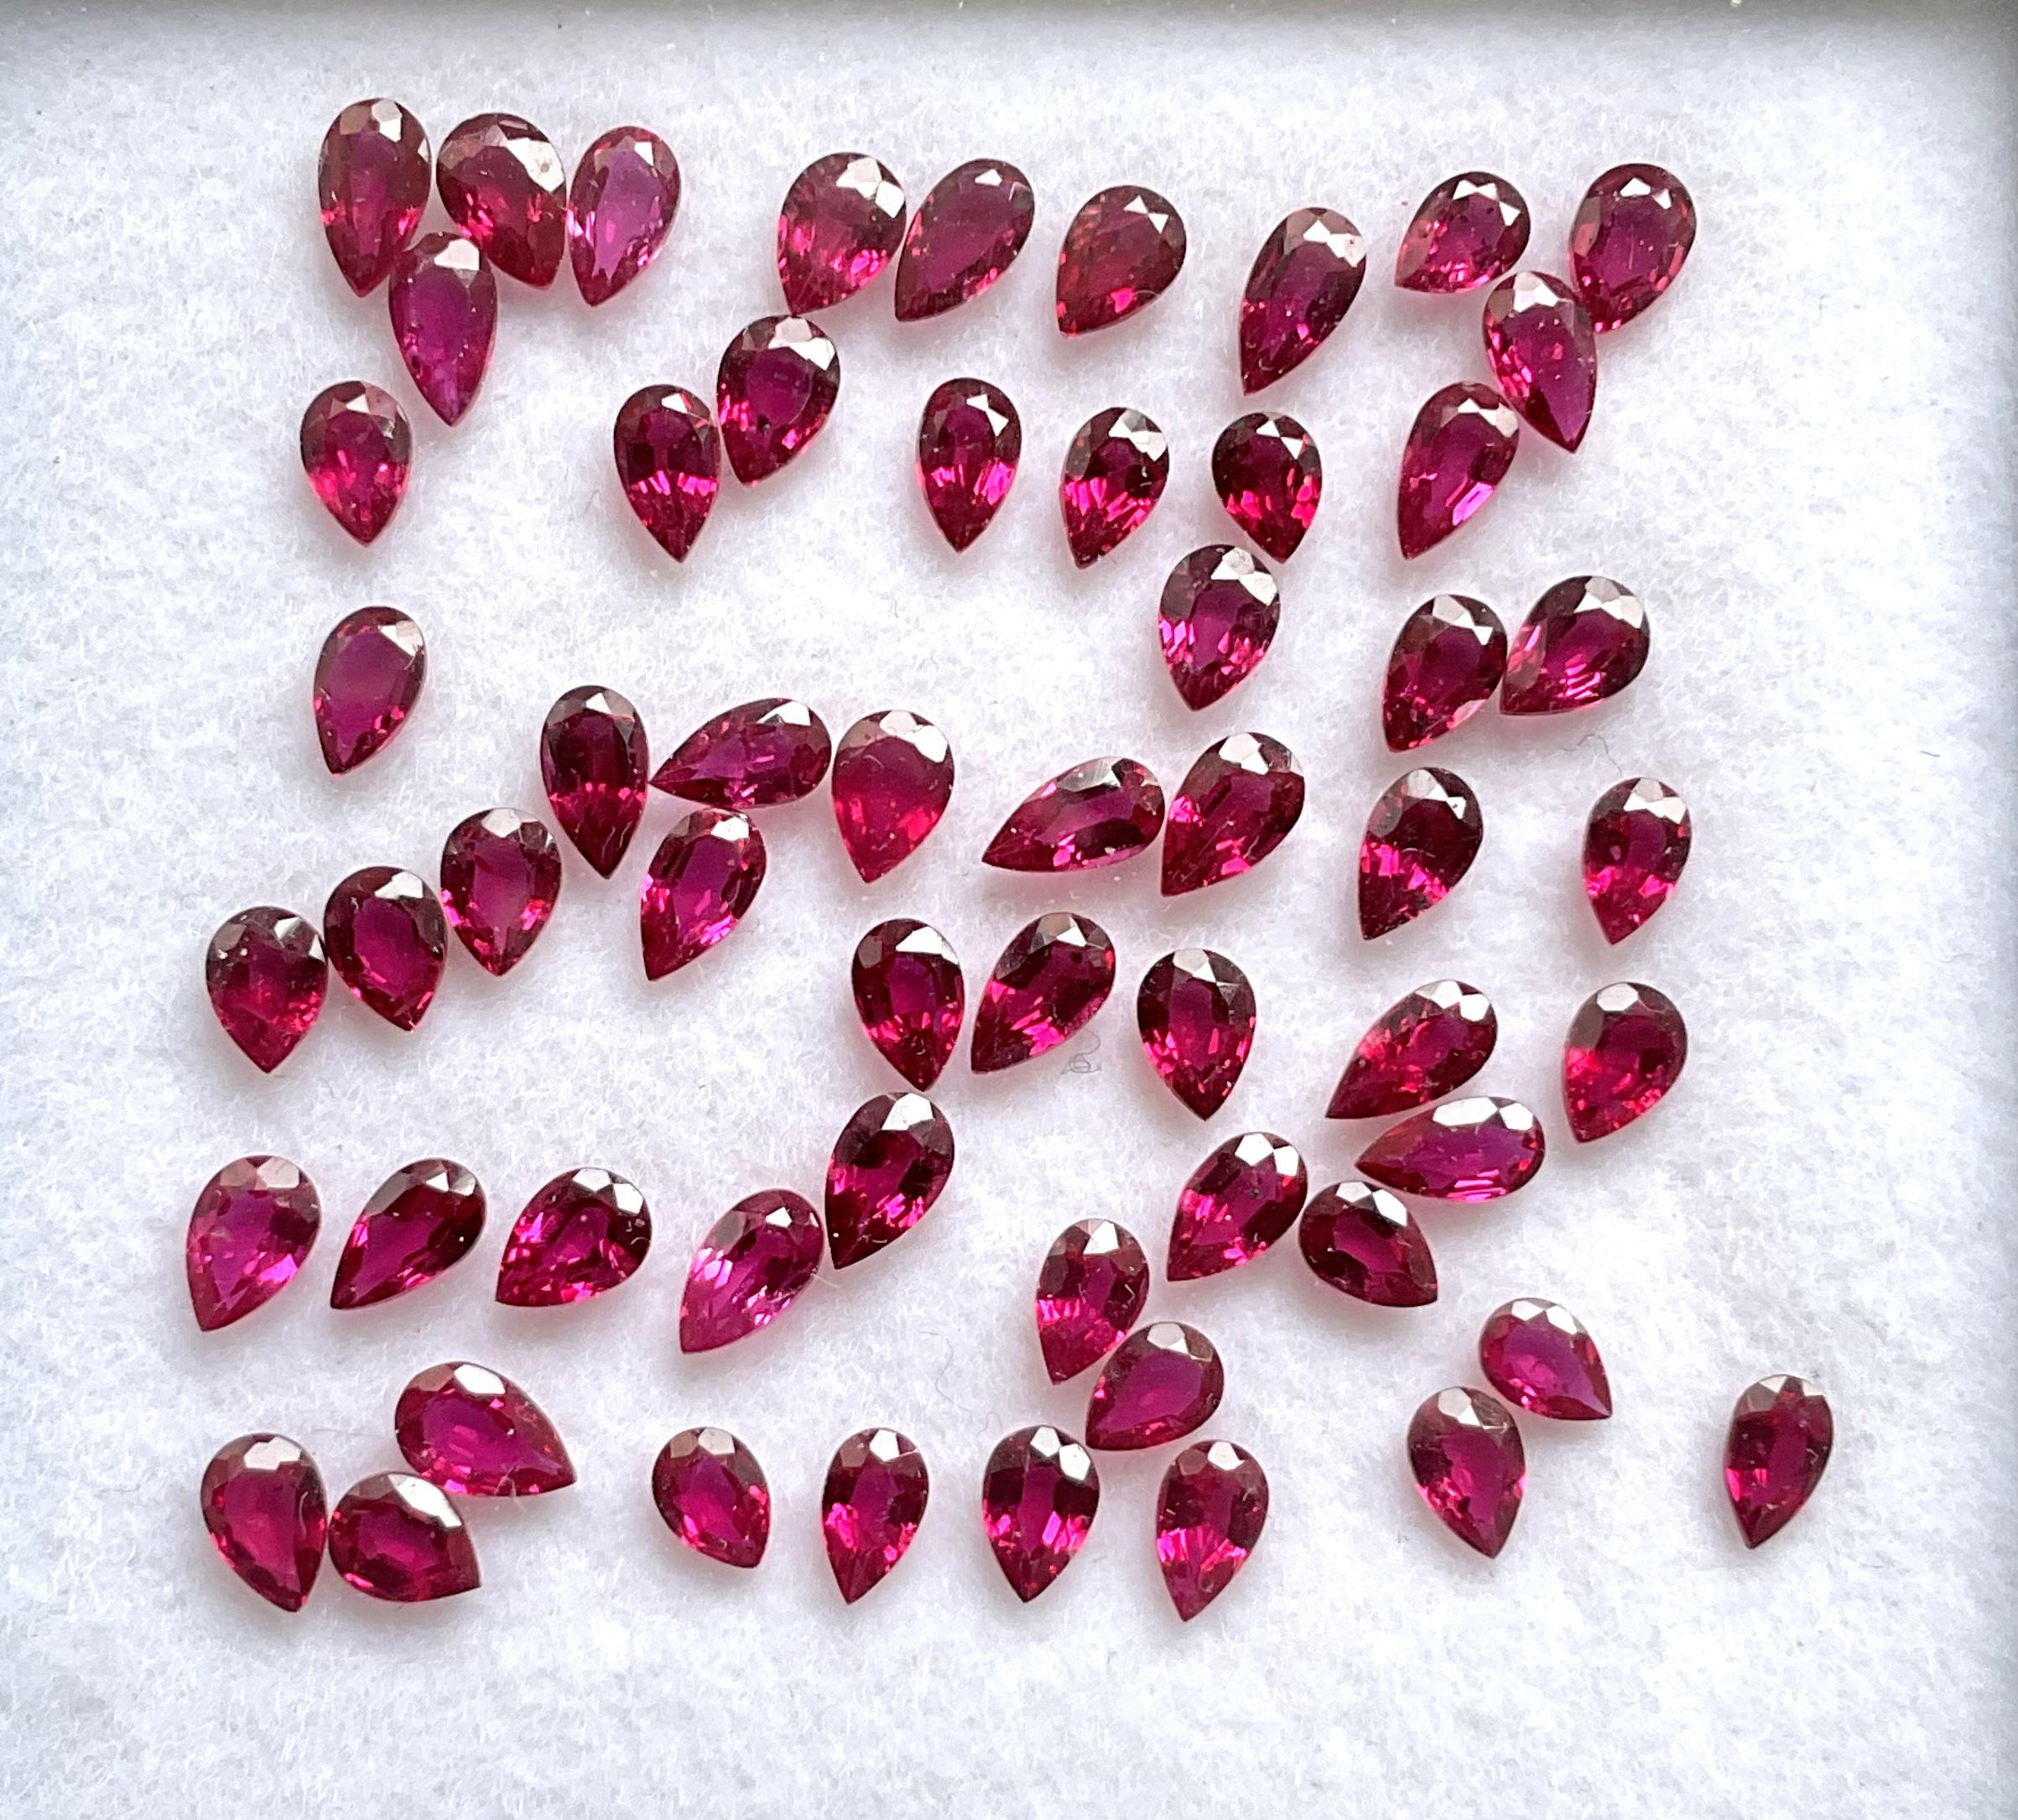 8.21 Carats Mozambique Ruby Top Quality Pear Cut stone No Heat Natural Gemstone (Rubis du Mozambique de qualité supérieure, taille poire, sans chaleur) en vente 2